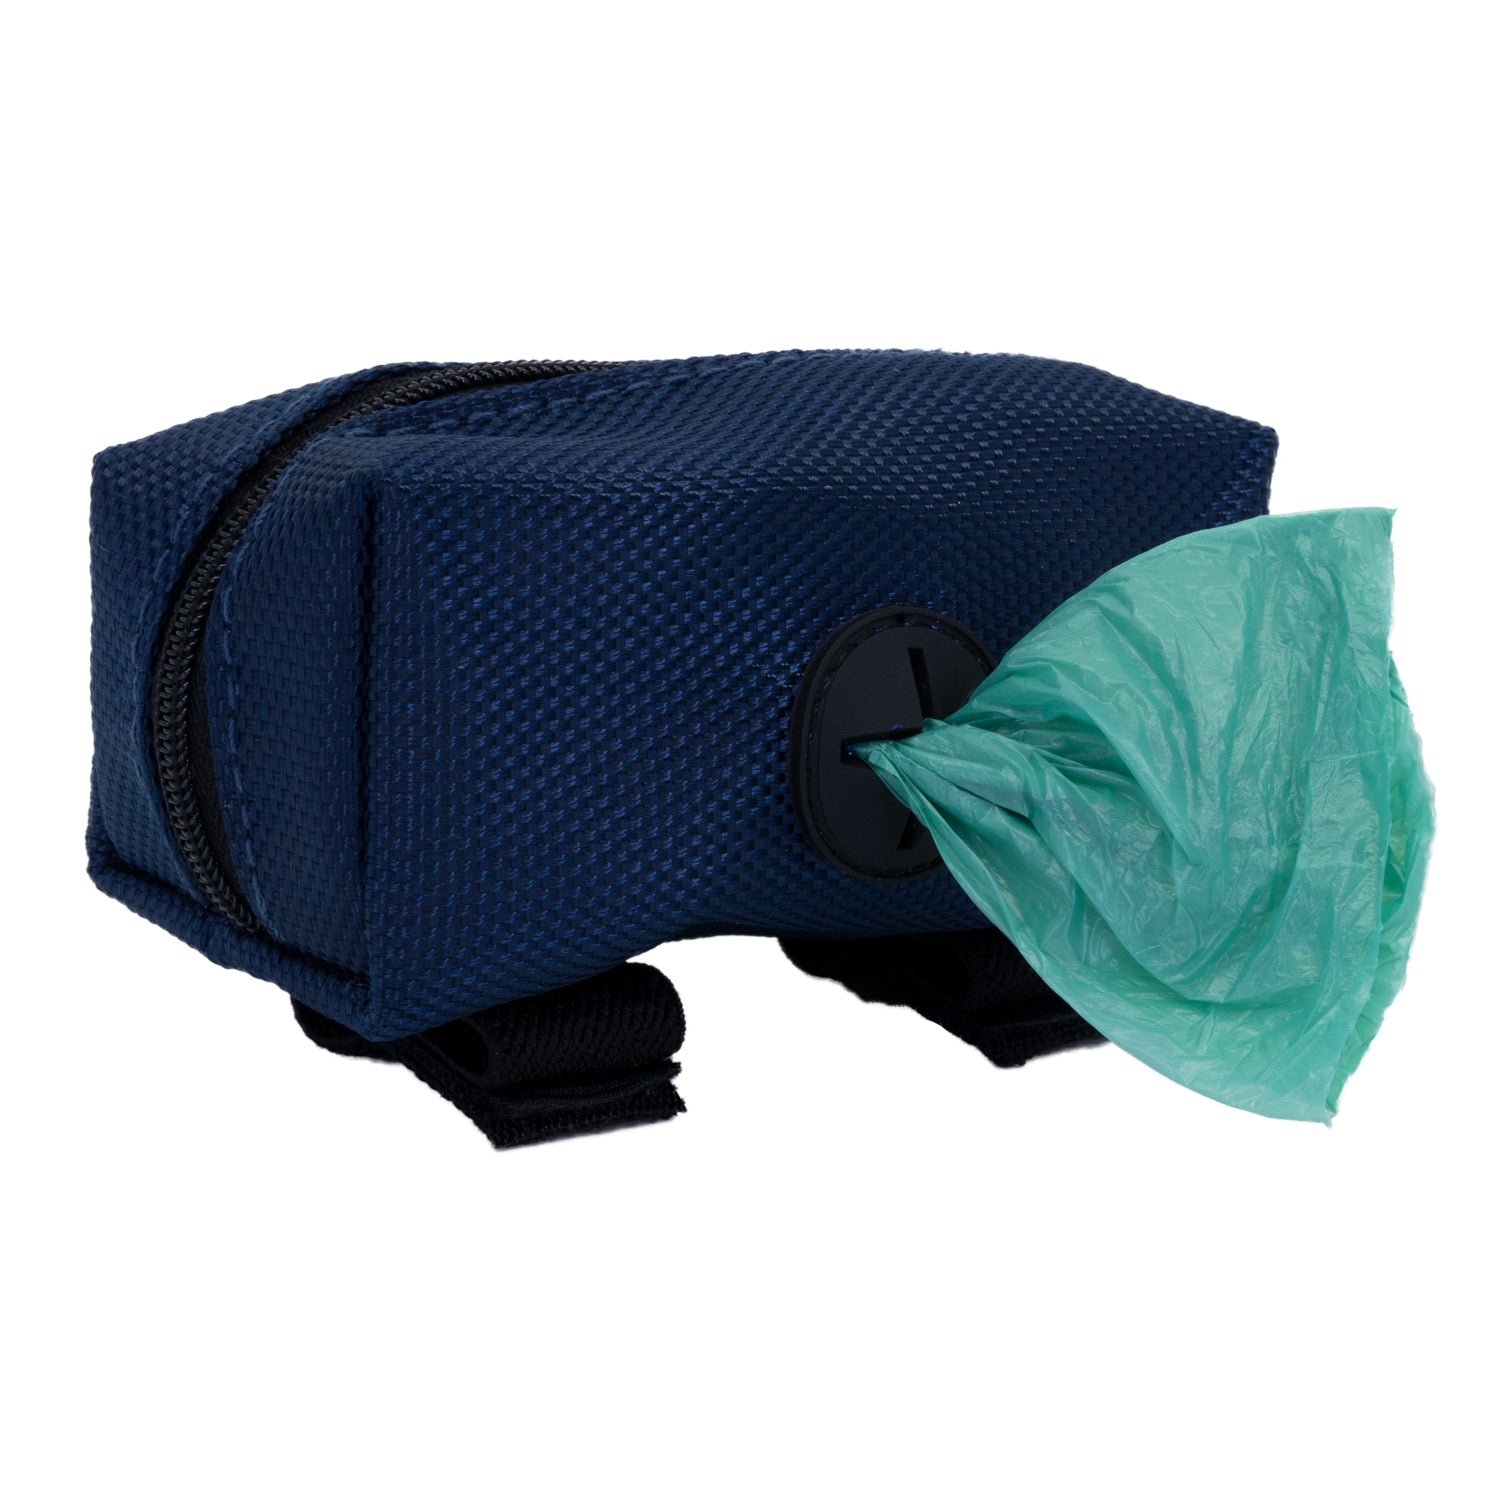 dog-bag-carrier-poop-bag-holder-midnight-blue-with-dog-bag